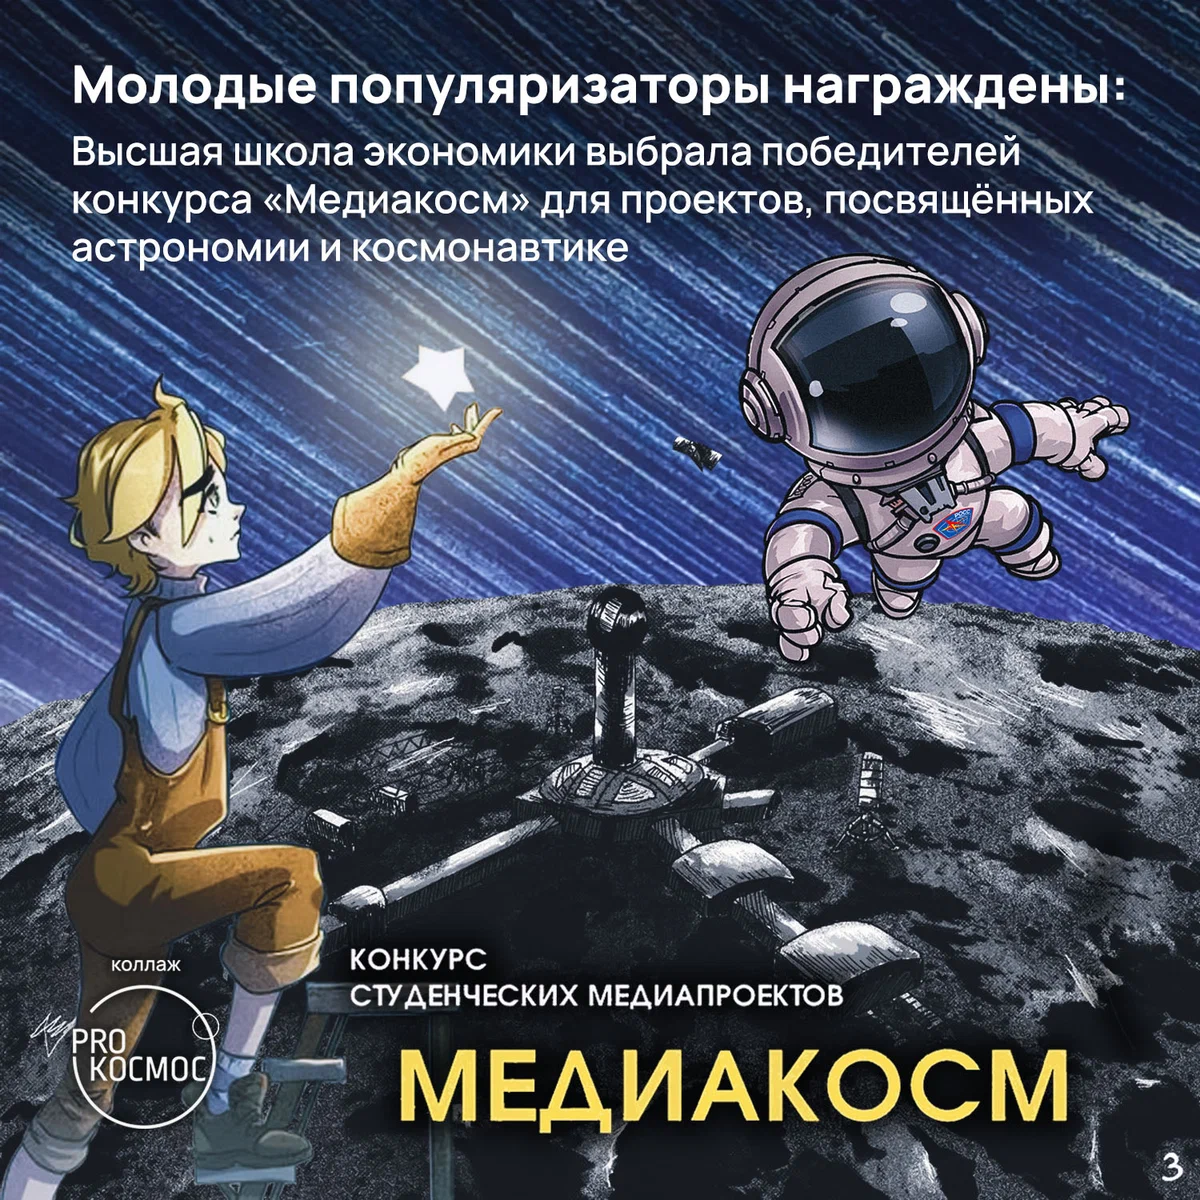 Молодые популяризаторы награждены: ВШЭ выбрала победителей конкурса «Медиакосм» для проектов, посвящённых астрономии и космонавтике height=1200px width=1200px